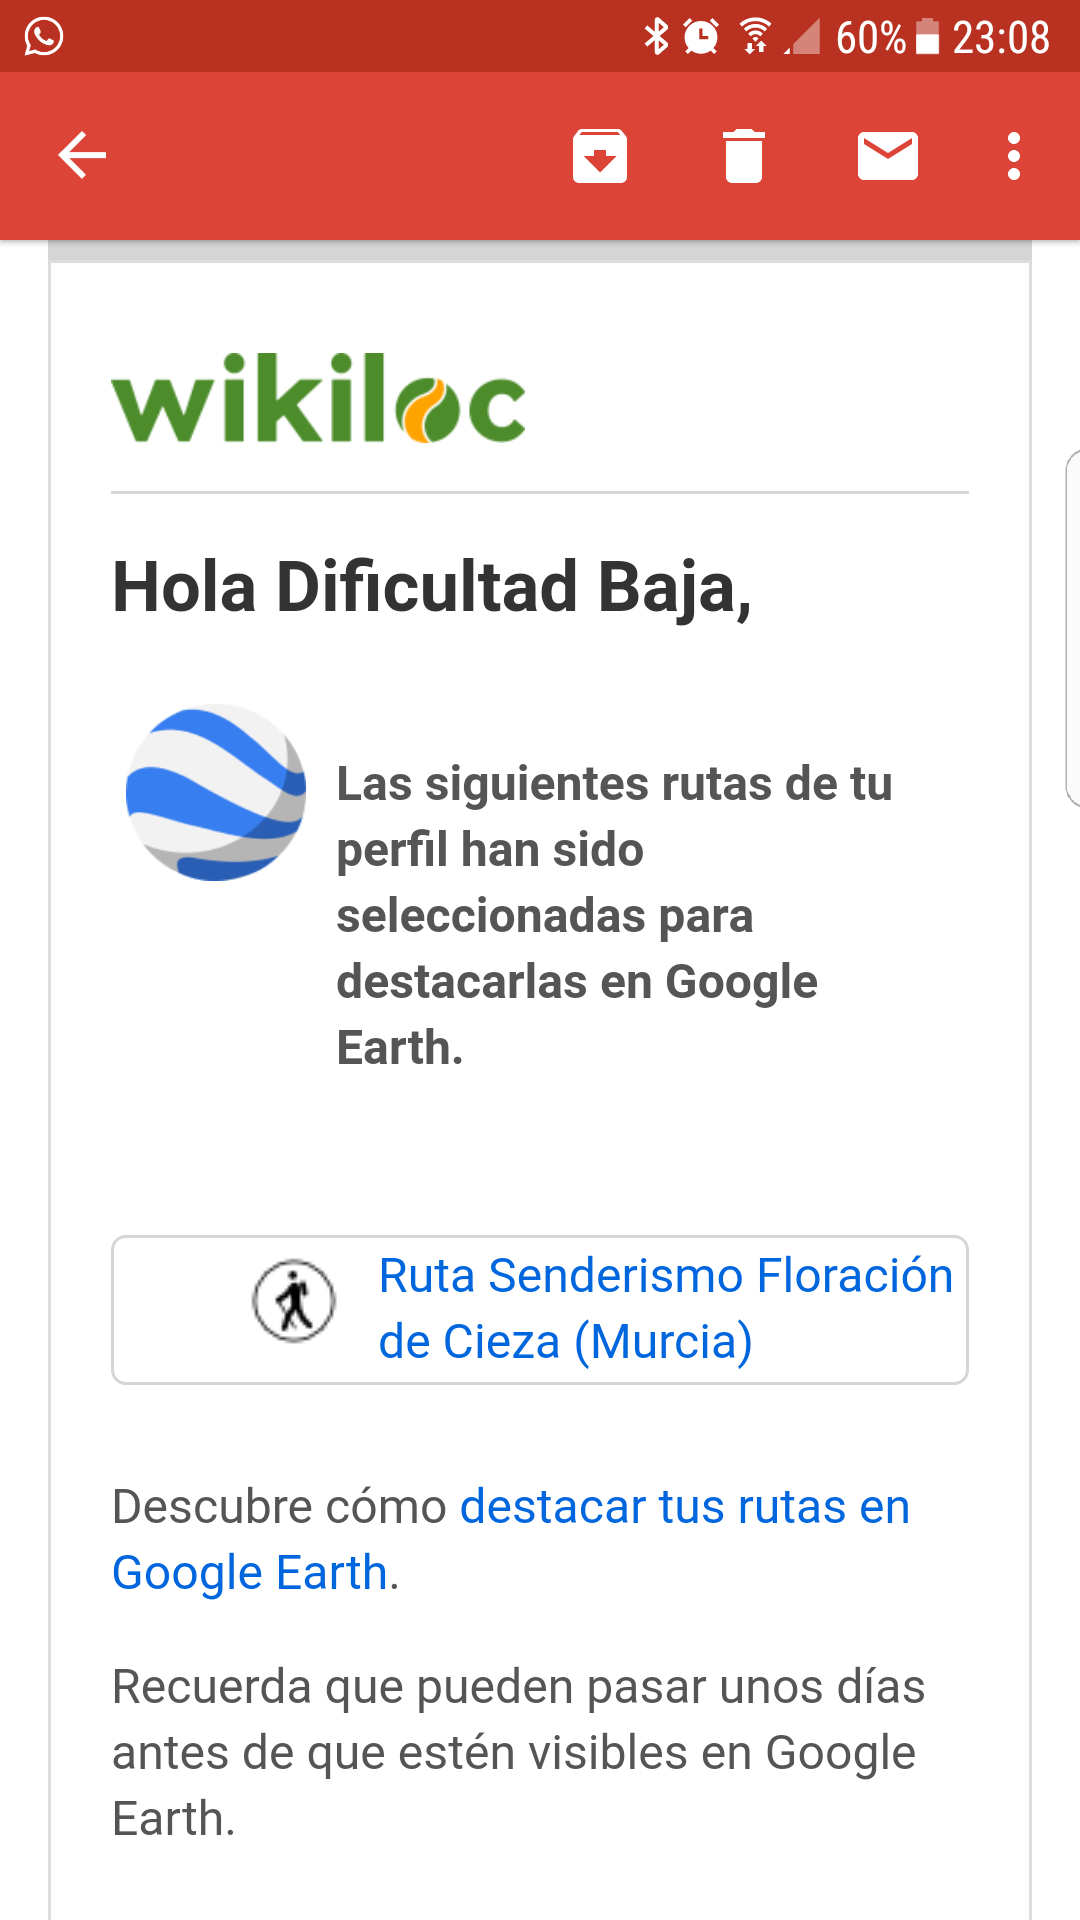 confirmacion_ruta_senderismo_dificultad_baja_wikiloc_google_earth